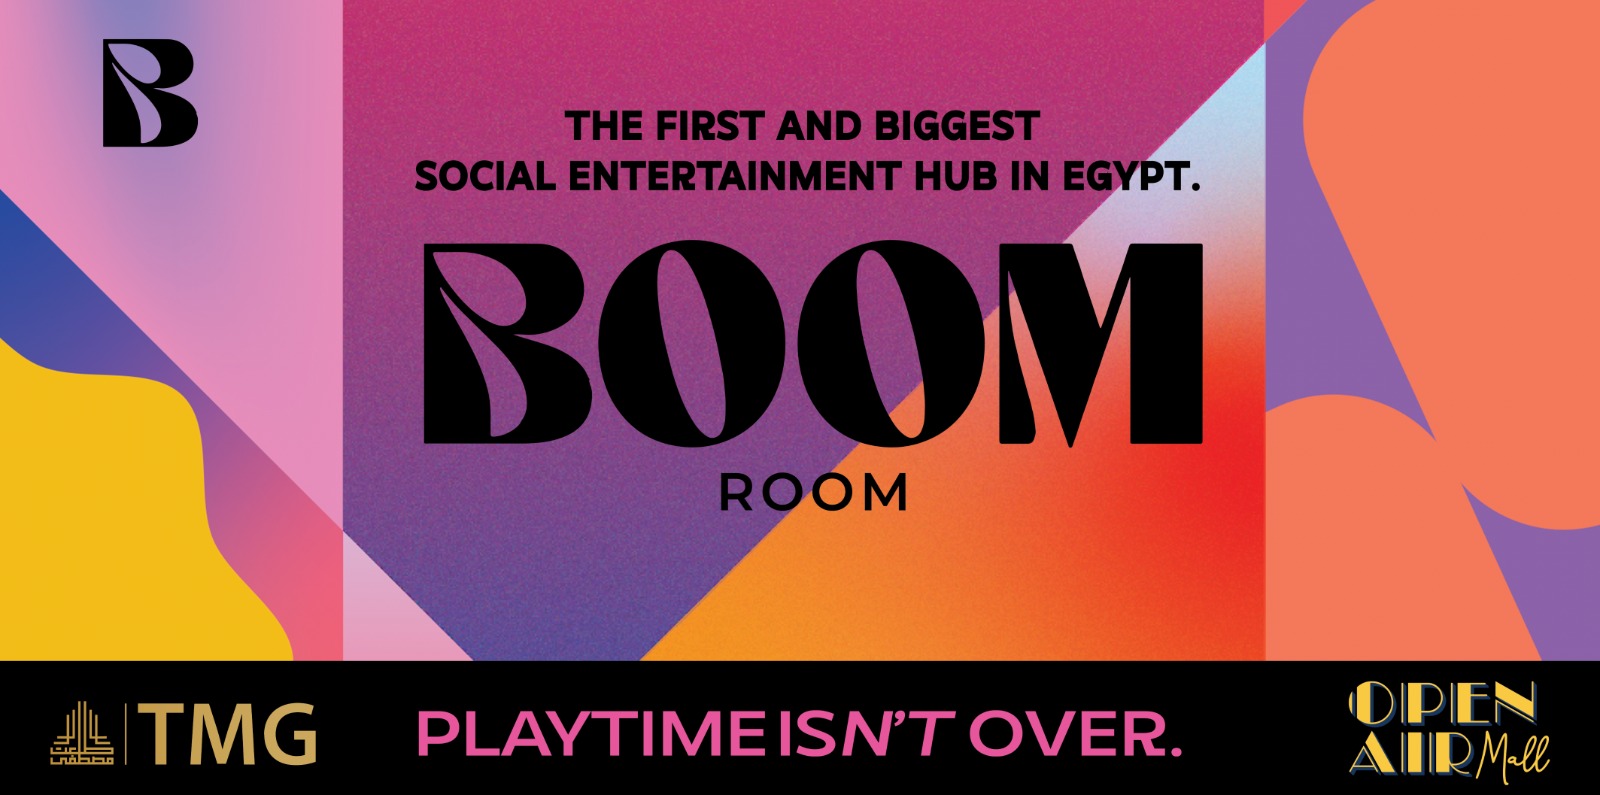 إنطلاق أول مركز ترفيهي إجتماعي في مصر "Boom Room" في اوبن آير مول مدينتي